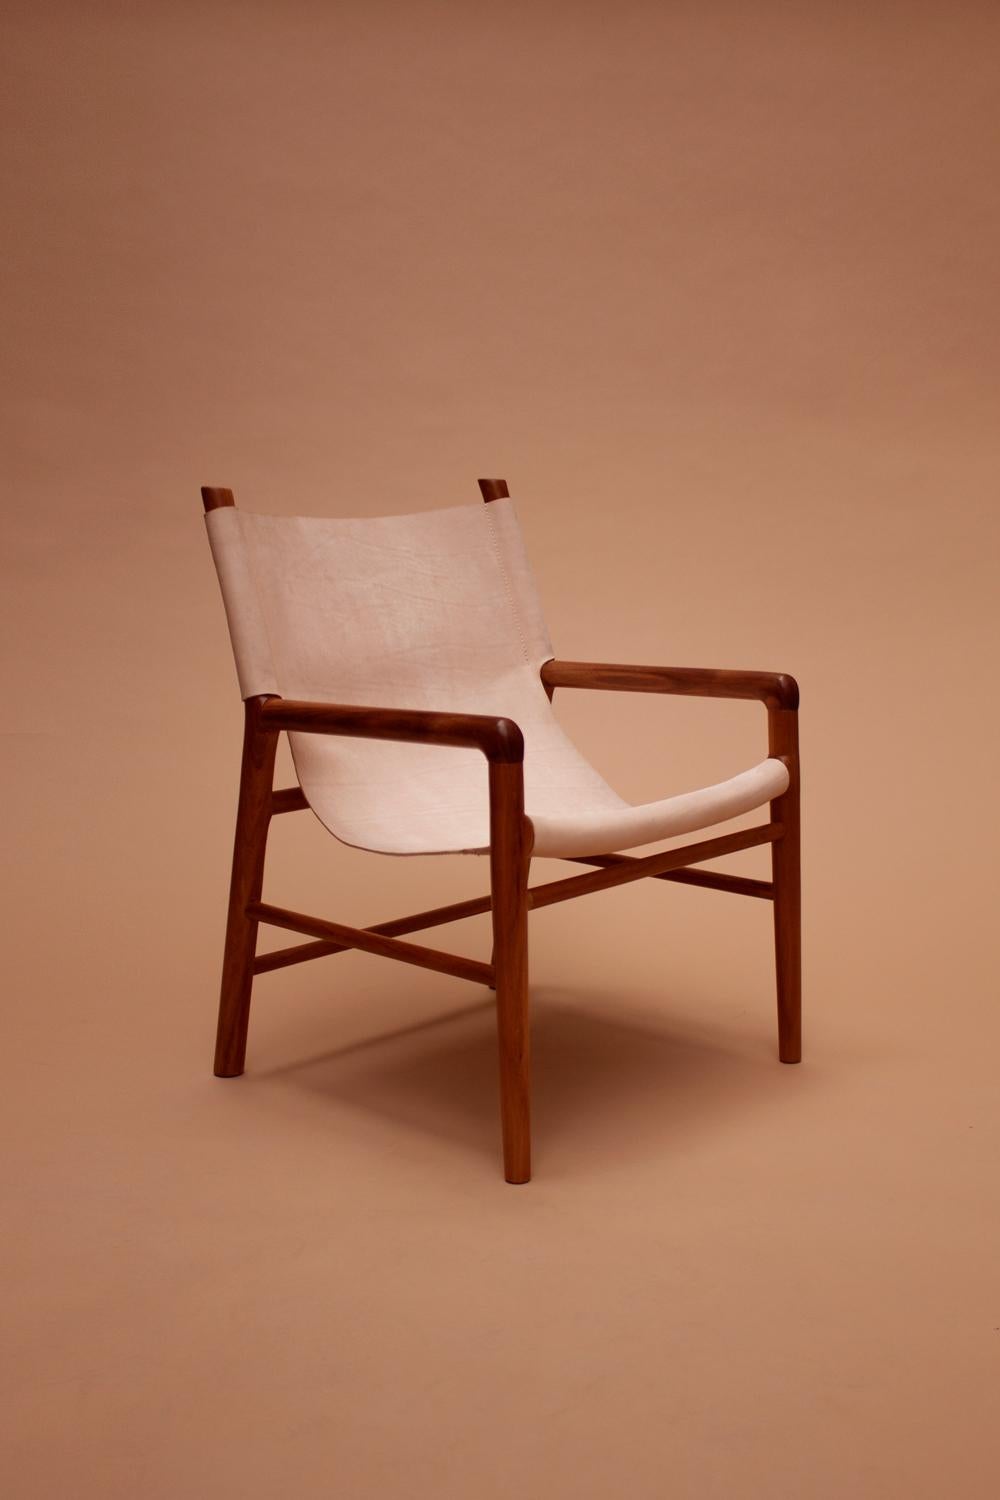 
Voici notre exquise chaise artisanale, méticuleusement fabriquée en bois tropical de Tzalam et ornée de cuir naturel, un véritable chef-d'œuvre de León León Design à Mexico.

Chaque chaise est dotée d'une structure en bois de Tzalam méticuleusement